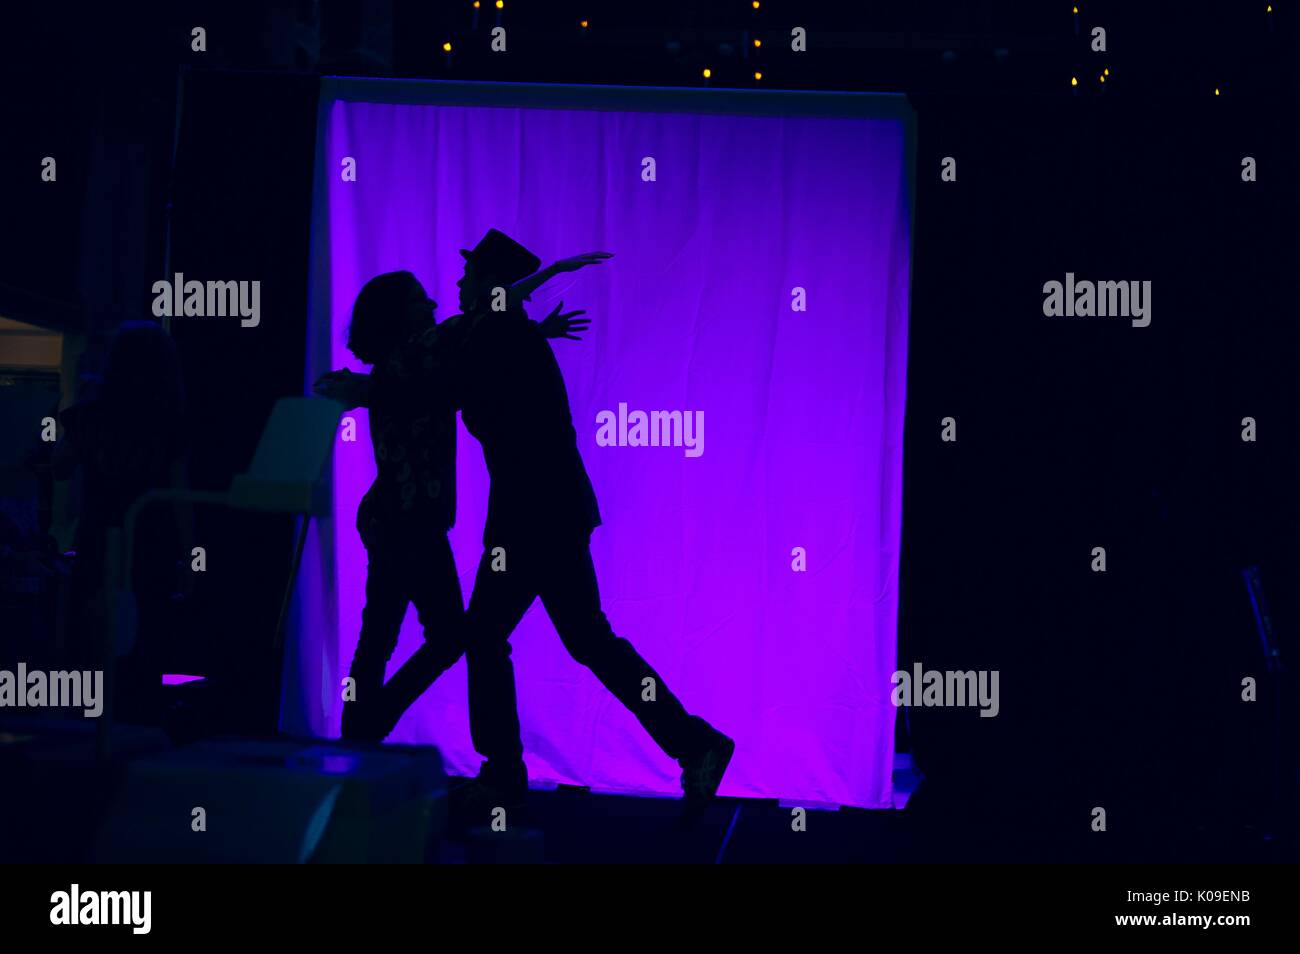 Les ombres de deux personnes, un homme et une femme, sur un écran rétro-éclairé de pourpre, Halloween à Peabody, 31 octobre 2015. Banque D'Images